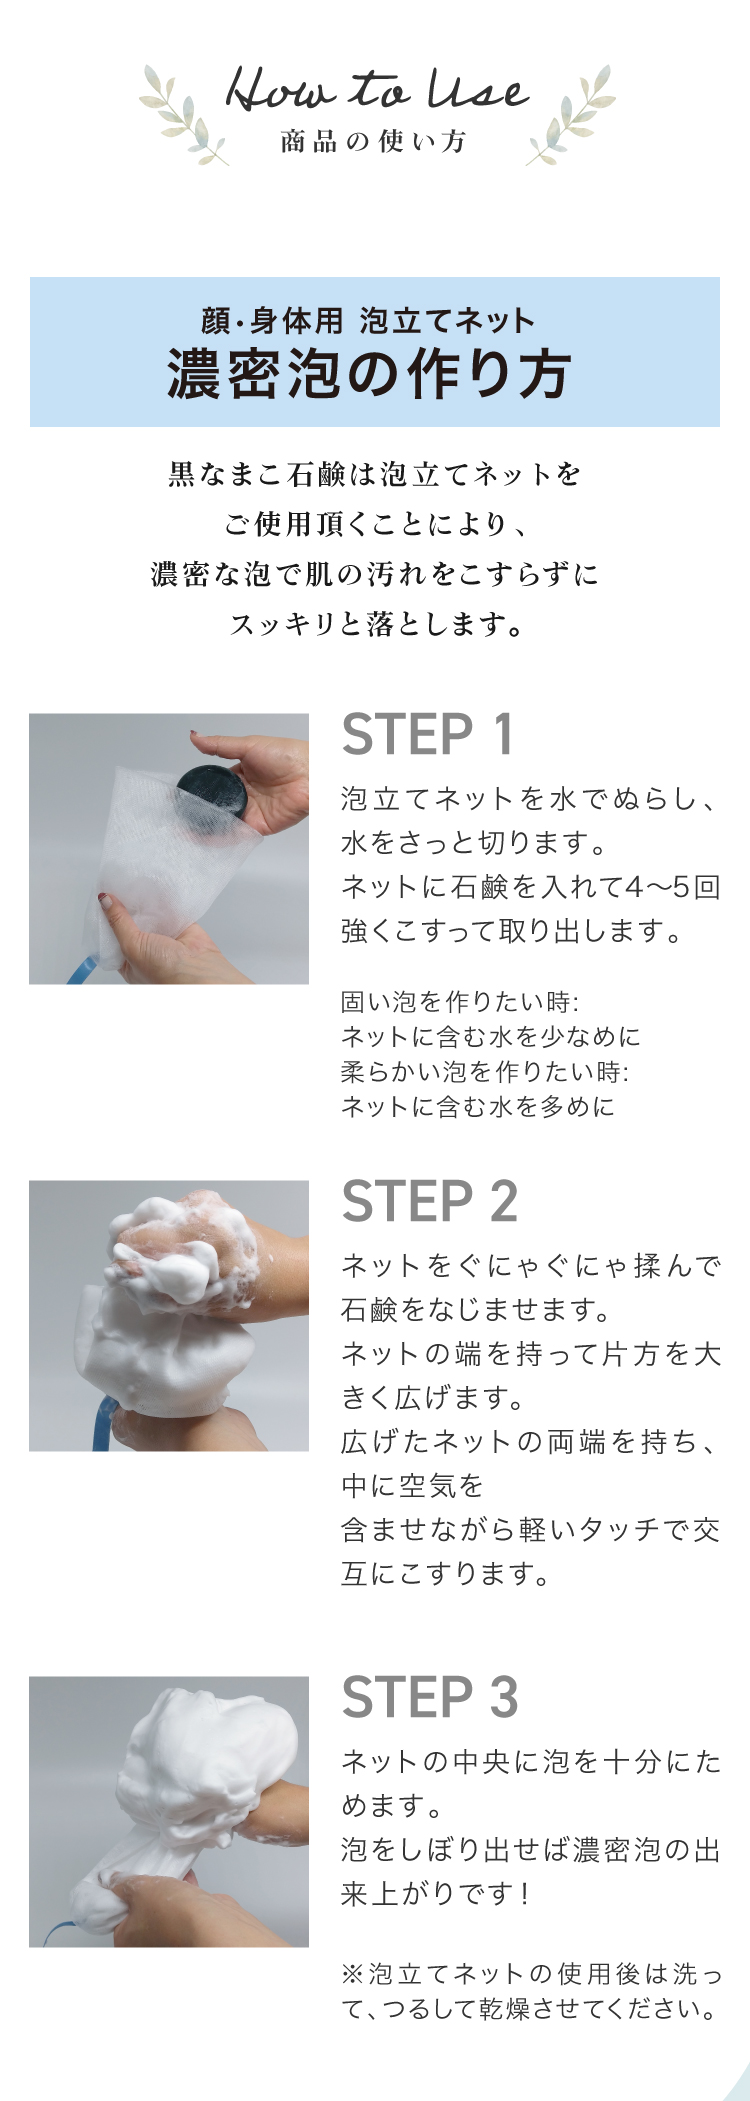 黒なまこ石鹸は泡立てネットをご使用頂くことにより、濃密な泡で肌の汚れをこすらずにスッキリと落とします。